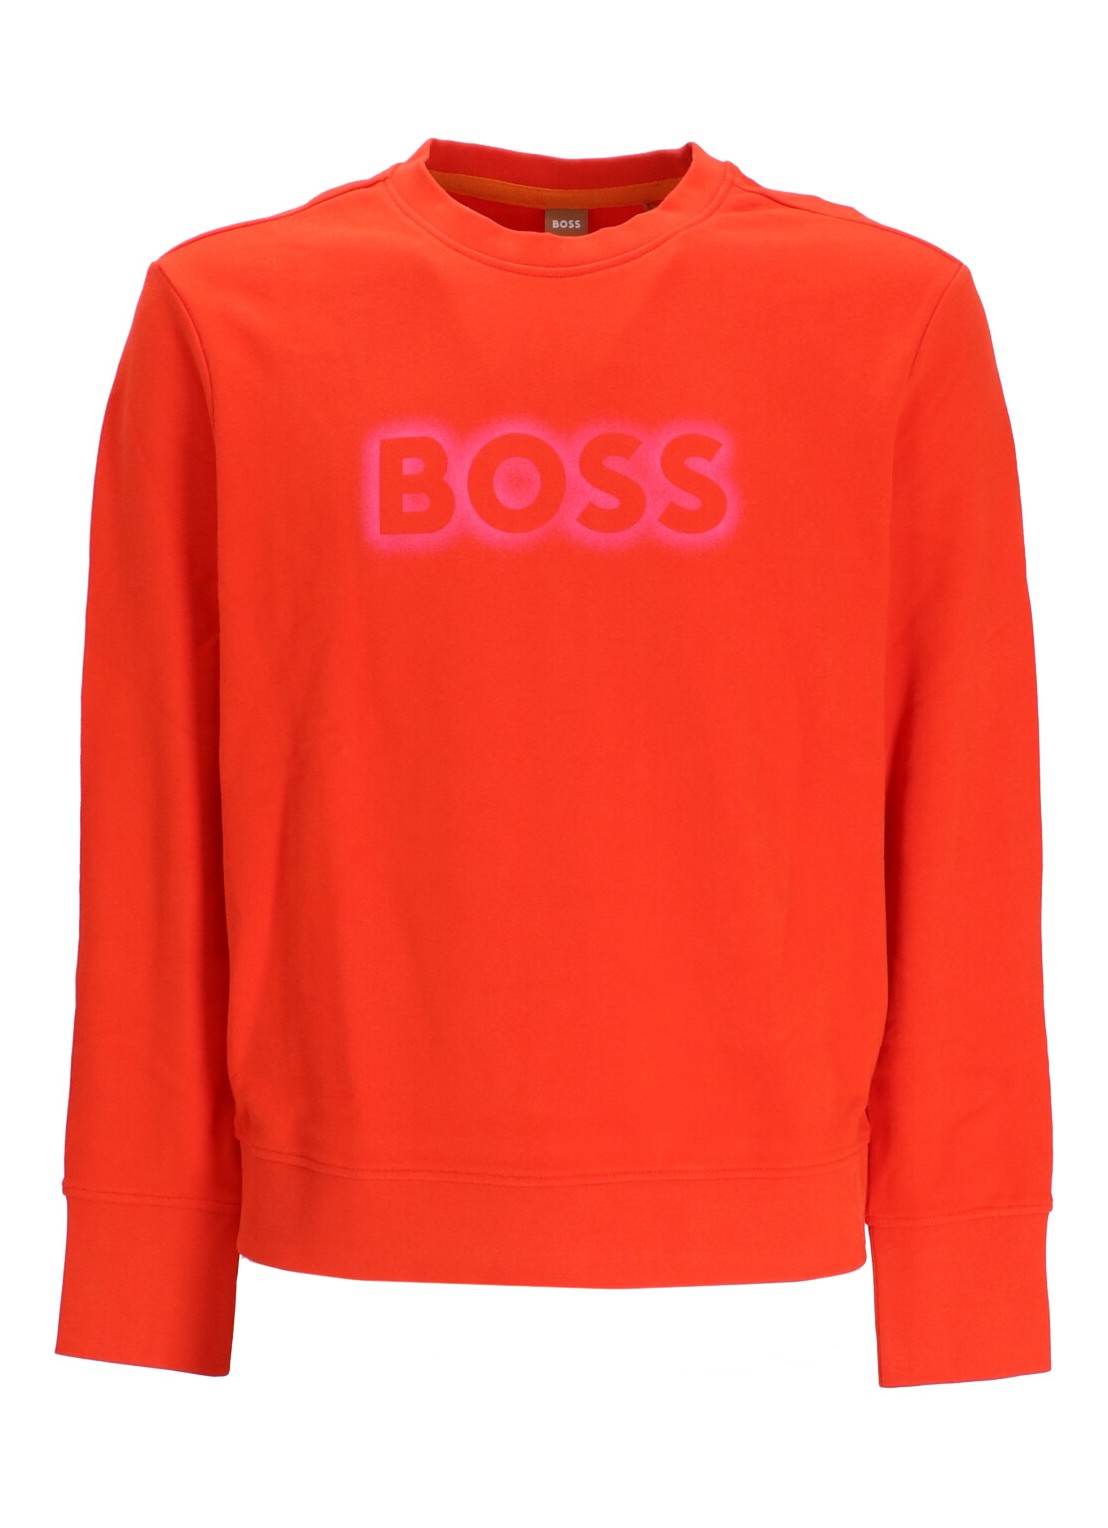 Sudadera boss sweater woman c_elaboss_6 50468357 821 talla naranja
 